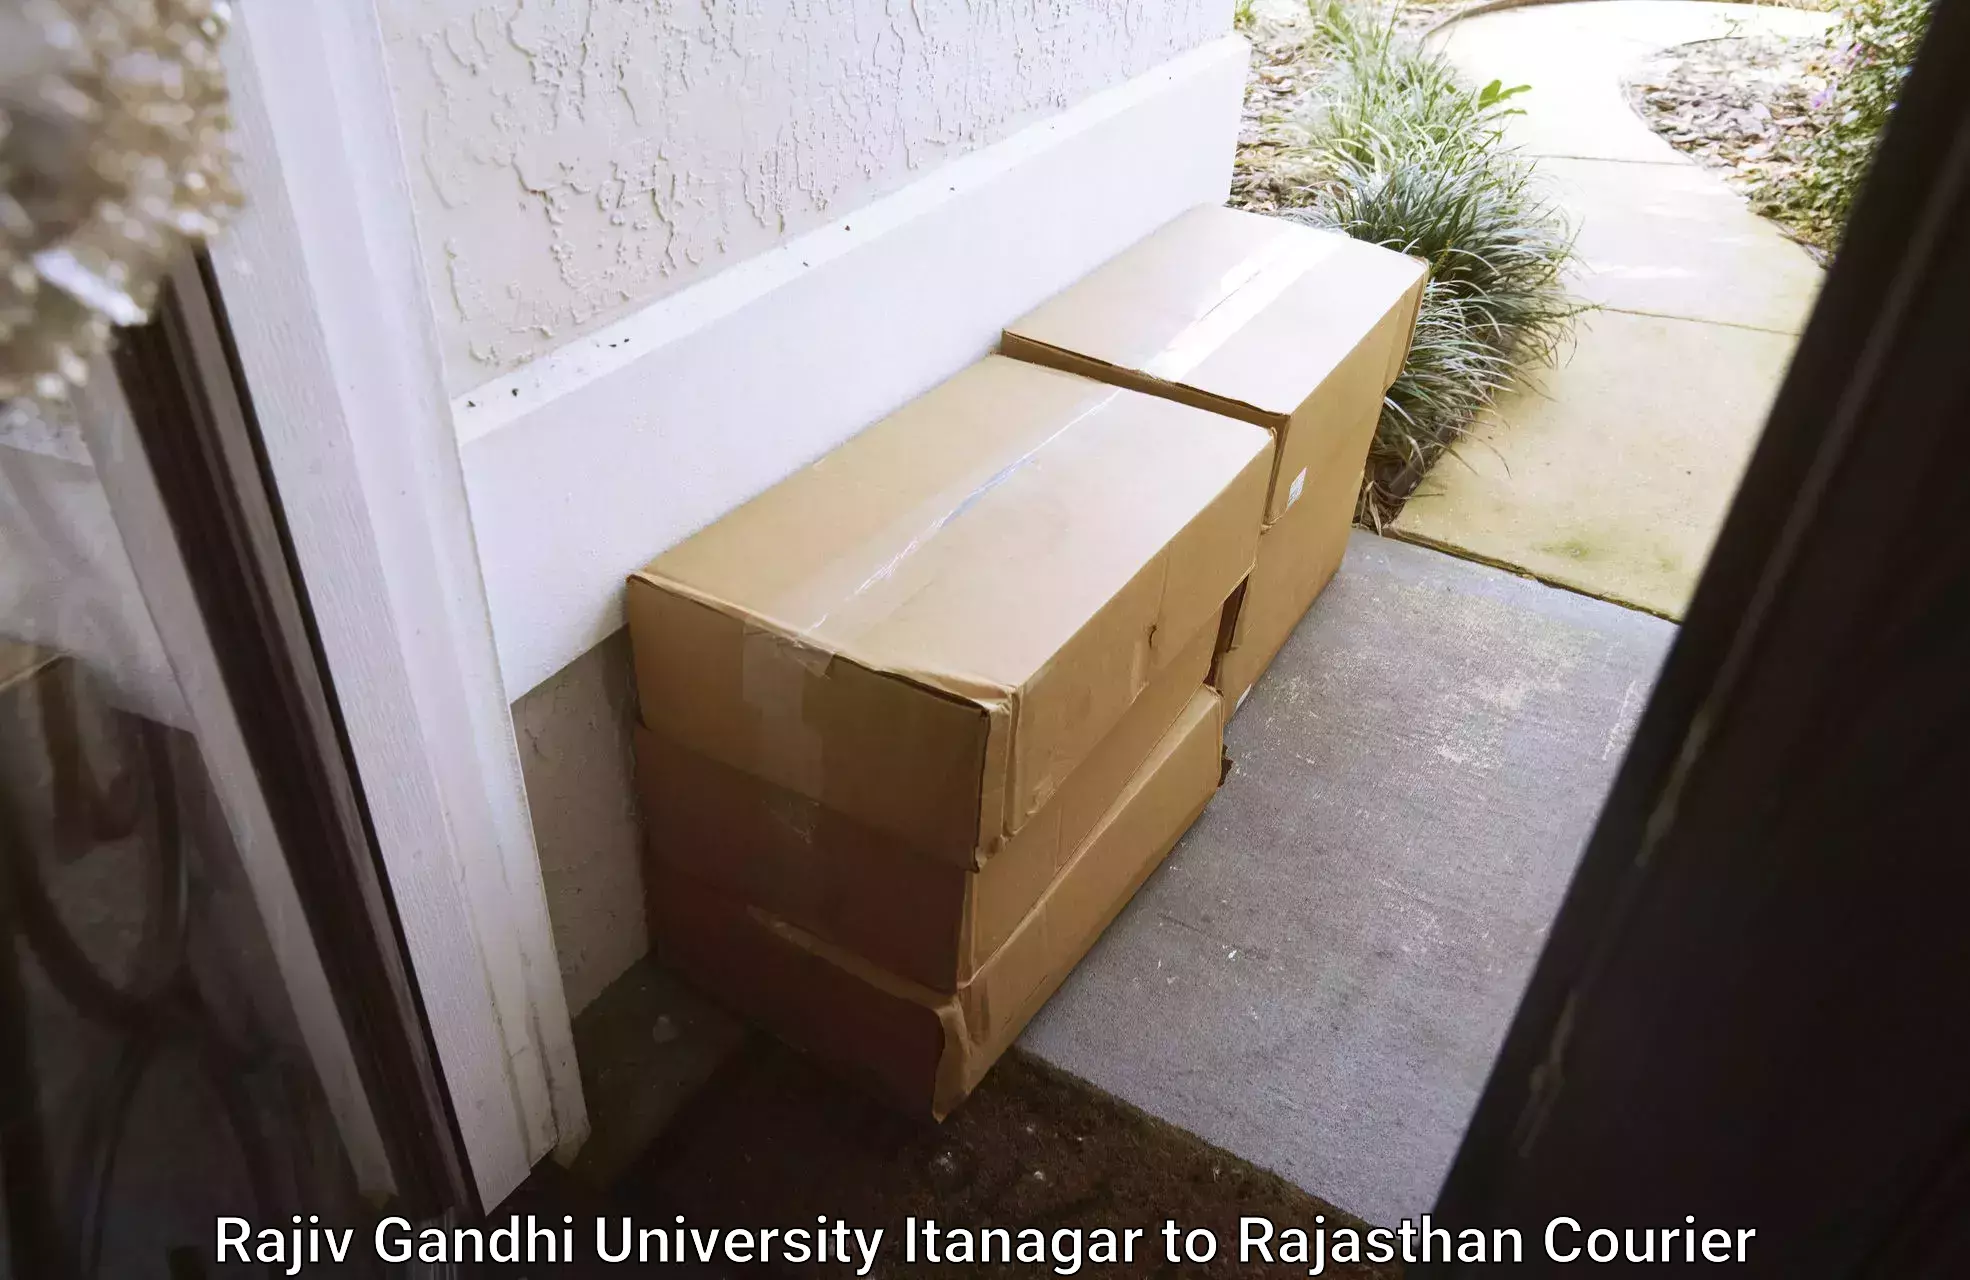 Global courier networks Rajiv Gandhi University Itanagar to Yathalakunta